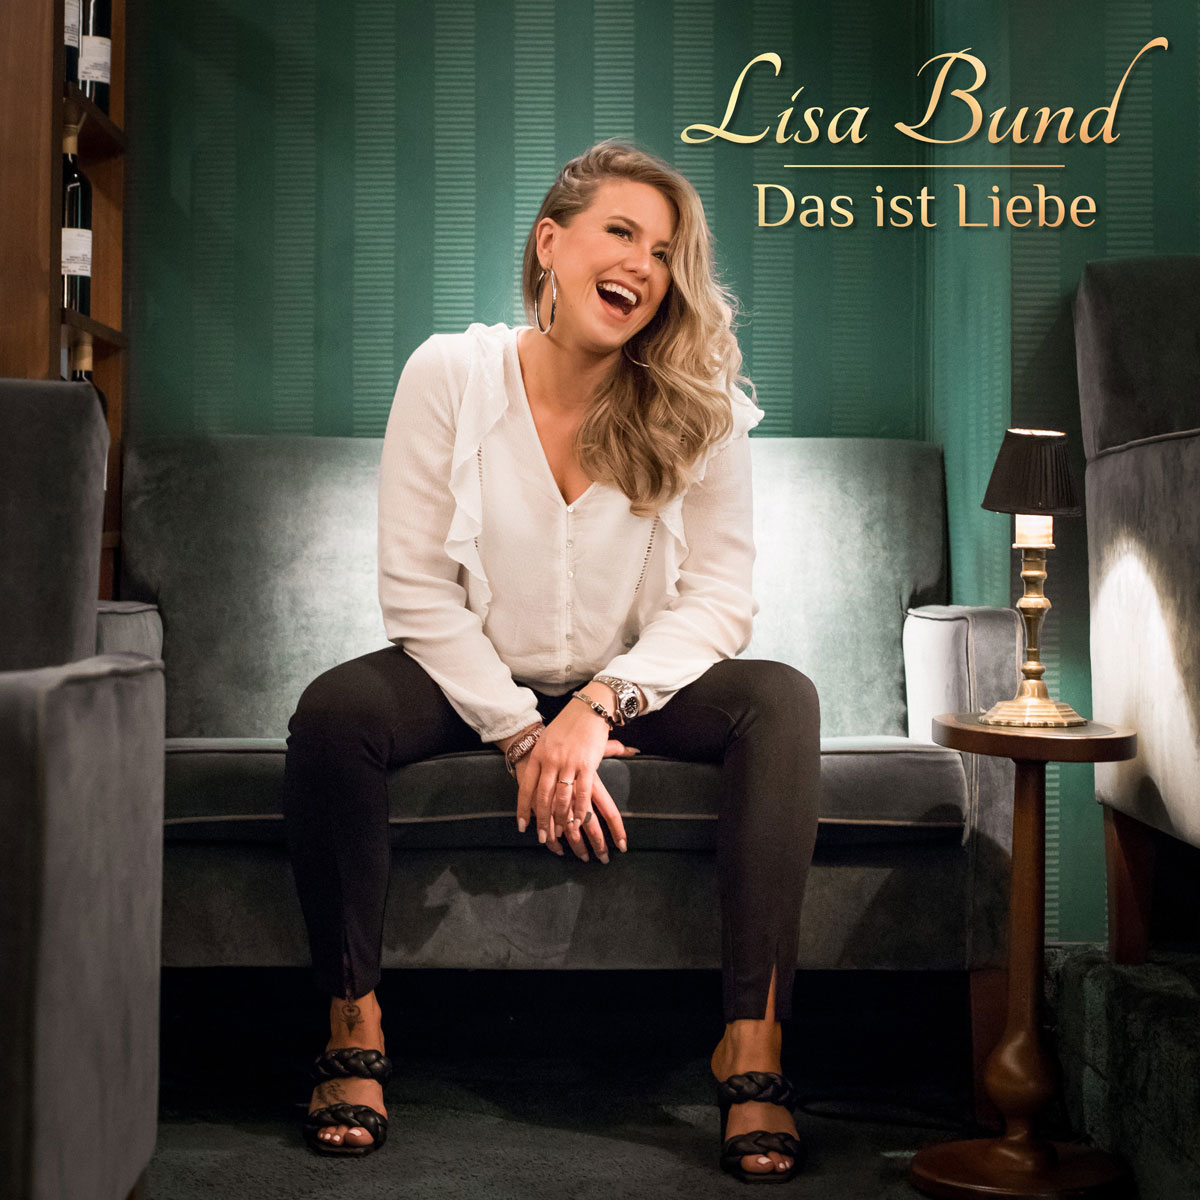 Lisa Bund - Das ist Liebe